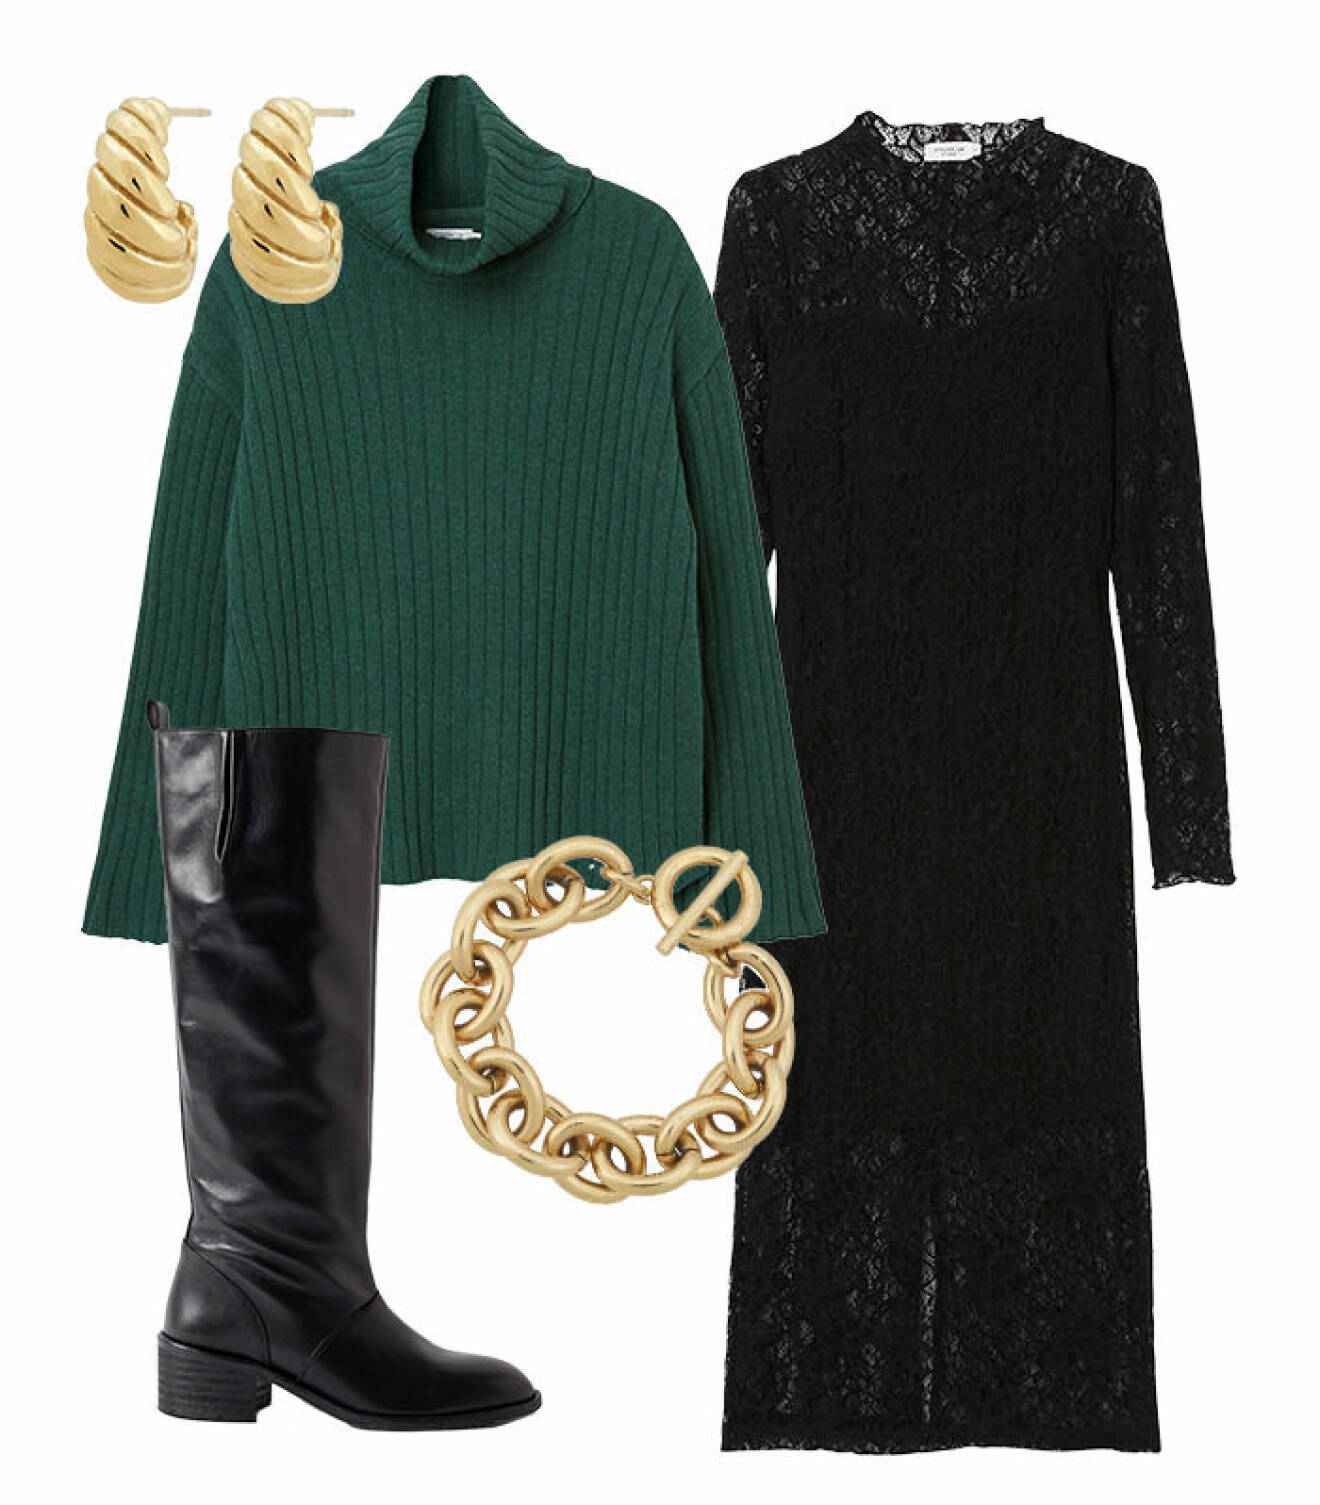 höstmode styling plagg trend spetsklänning MQ tips ELLE stickad tröja grön stövlar boots svart